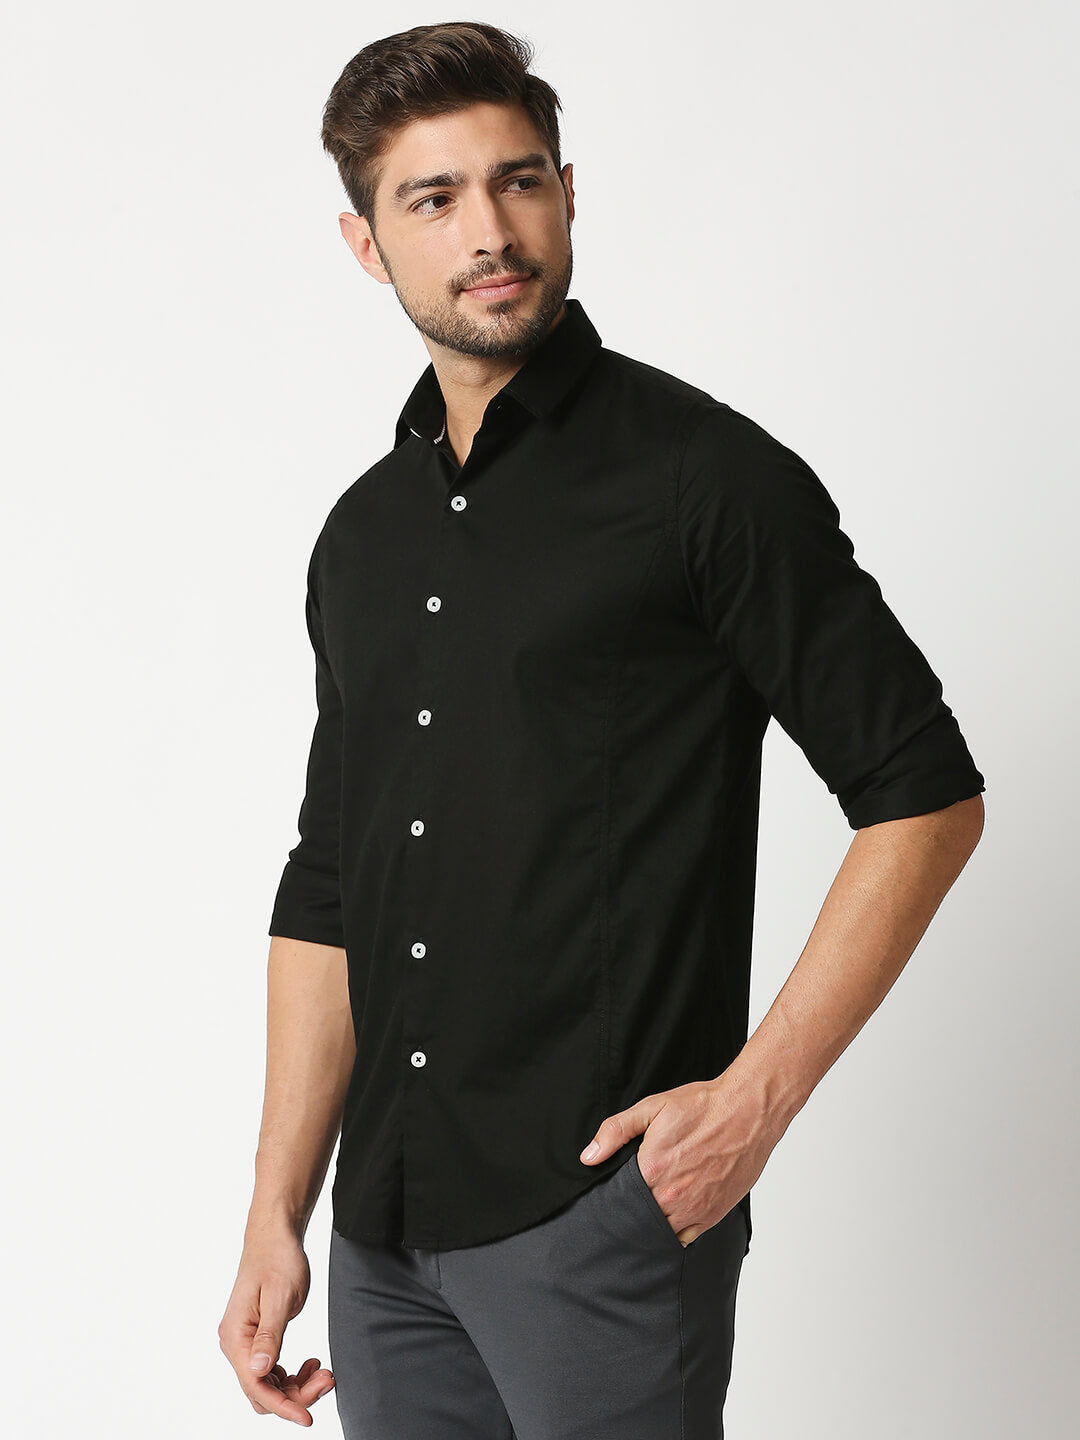 The Manaca Men Plain Shirt - Black